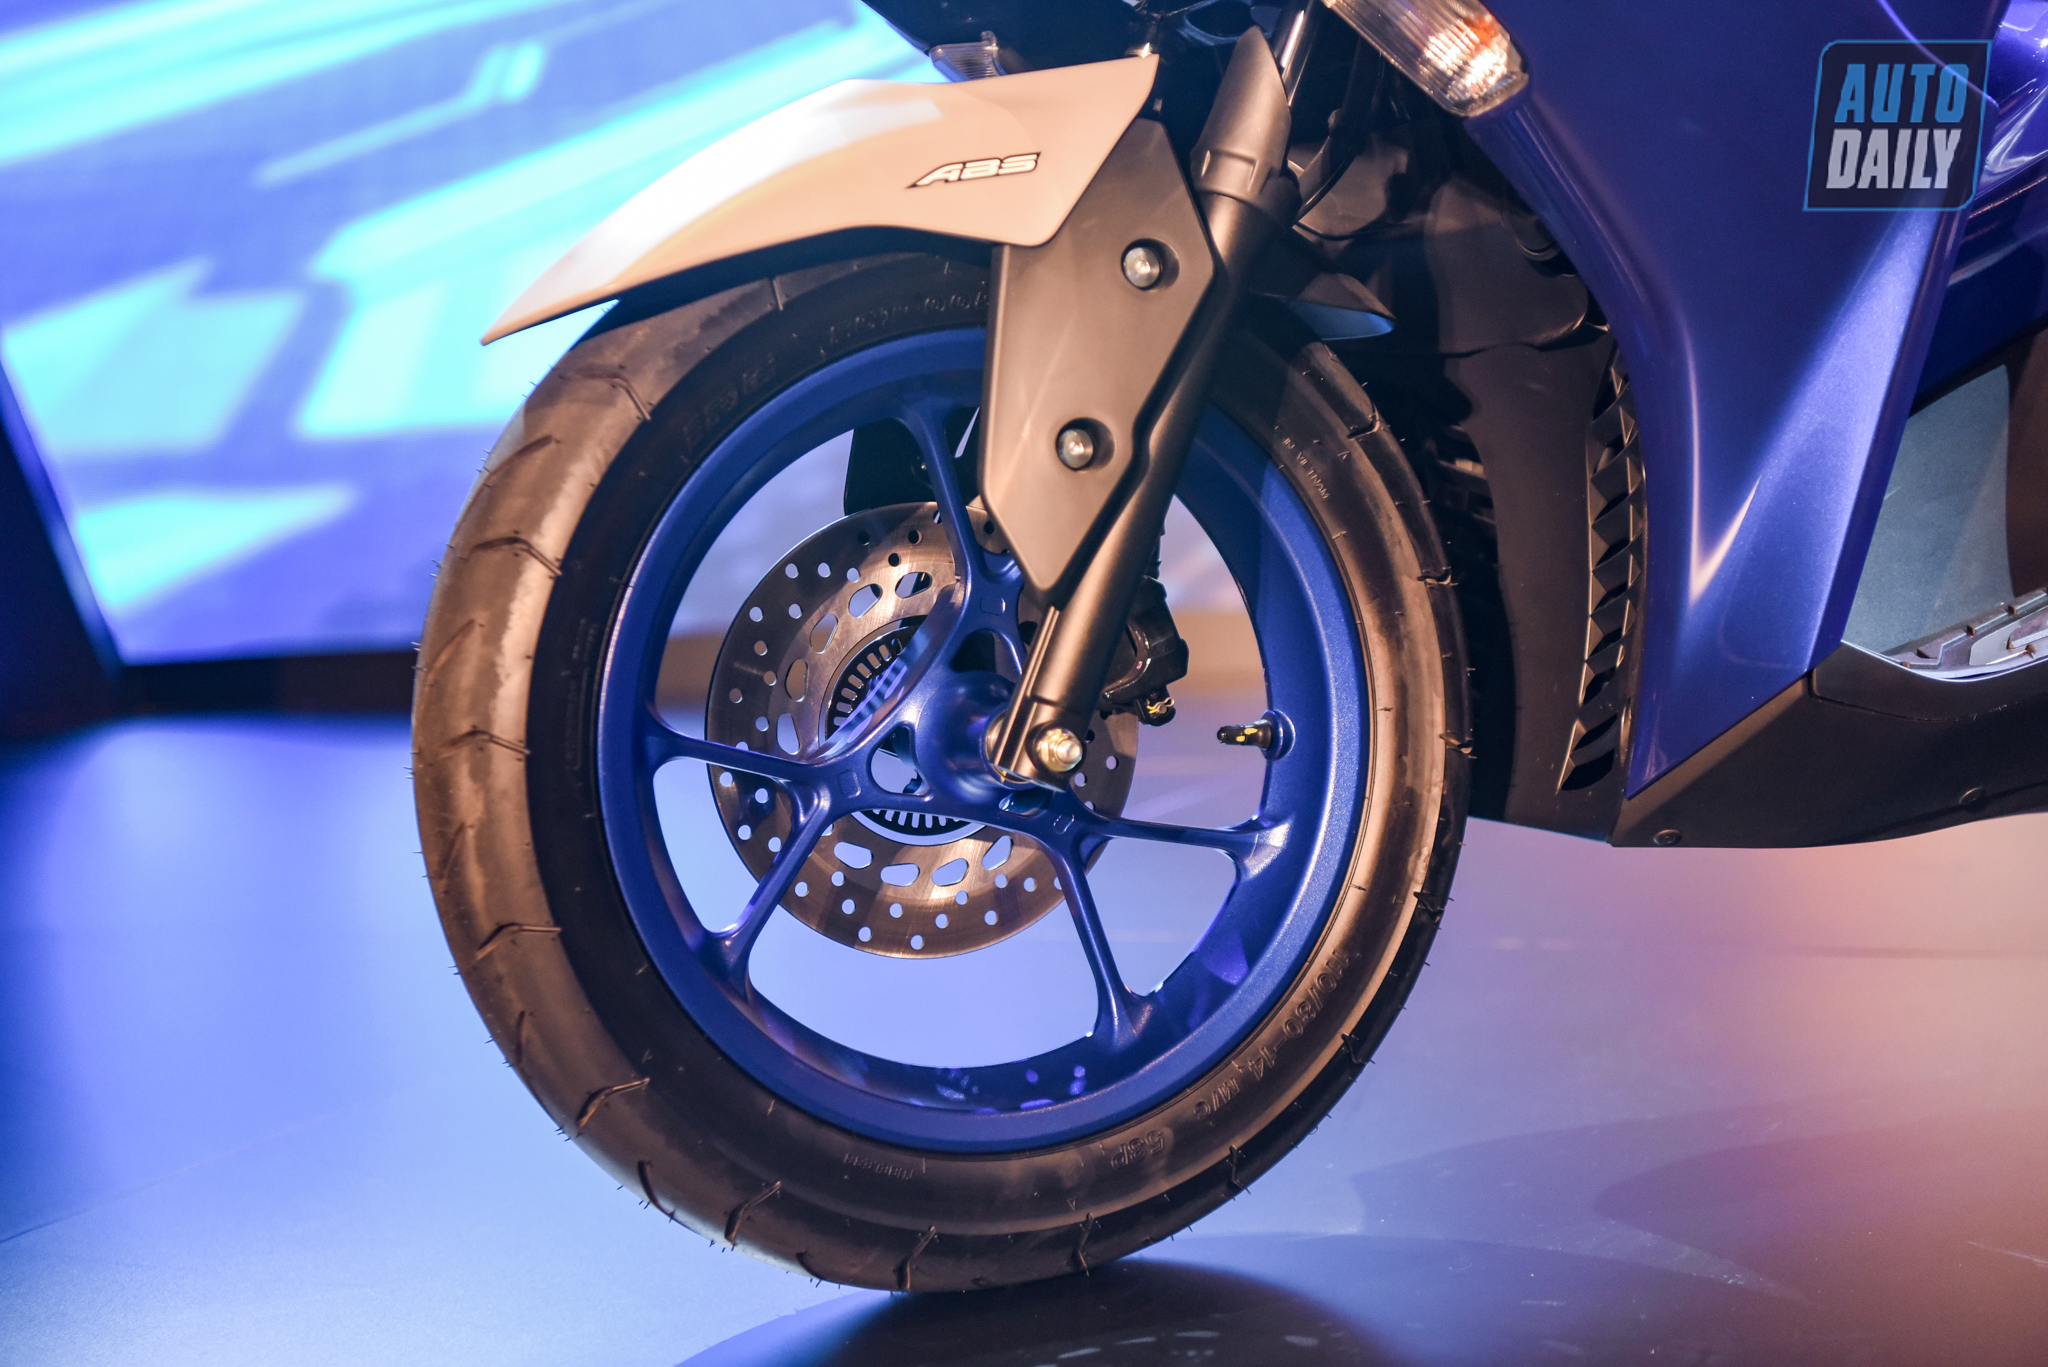 Chi tiết xe tay ga thể thao Yamaha NVX 155 2021 giá từ 53 triệu đồng yamaha-nvx-14.jpg